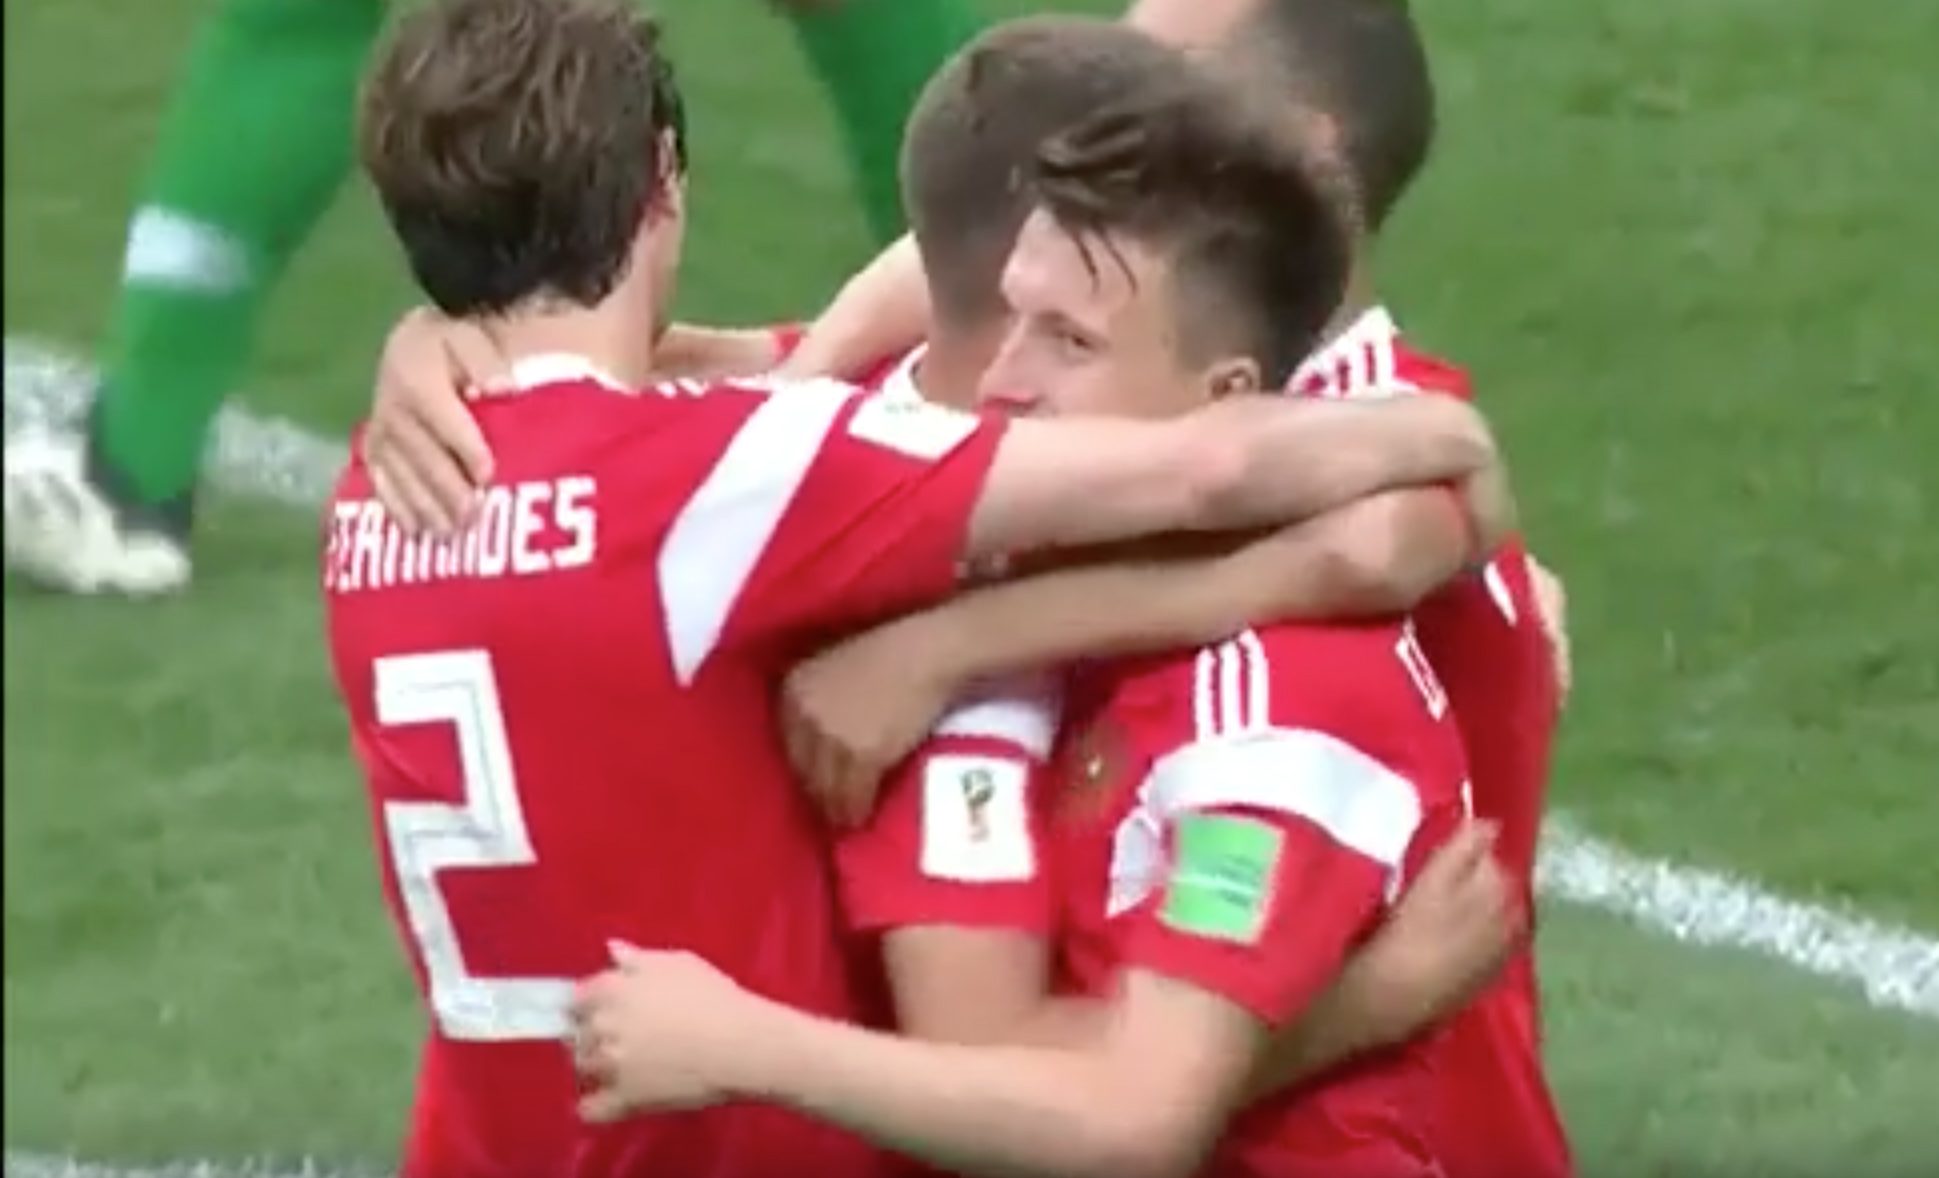 Sima orosz győzelemmel kezdődött a foci VB